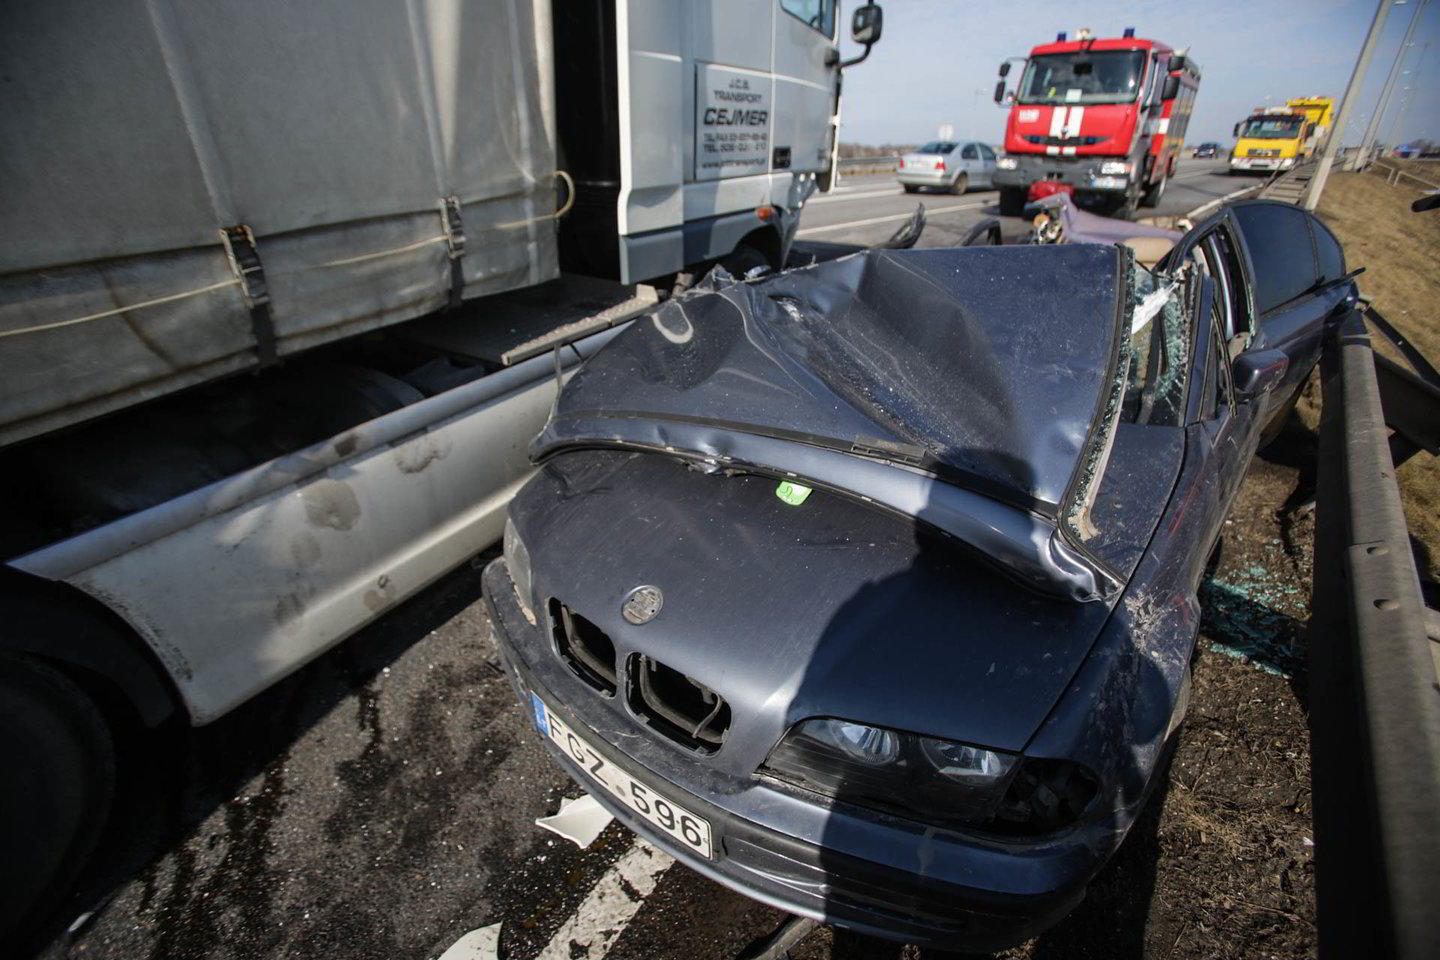  Antradienį pakaunėje susidūrė BMW ir vilkikas. Tragiškai žuvo jaunas BMW vairuotojas. Jo gyvybę būtų išgelbėję saugos diržai.<br> G.Bitvinsko nuotr.